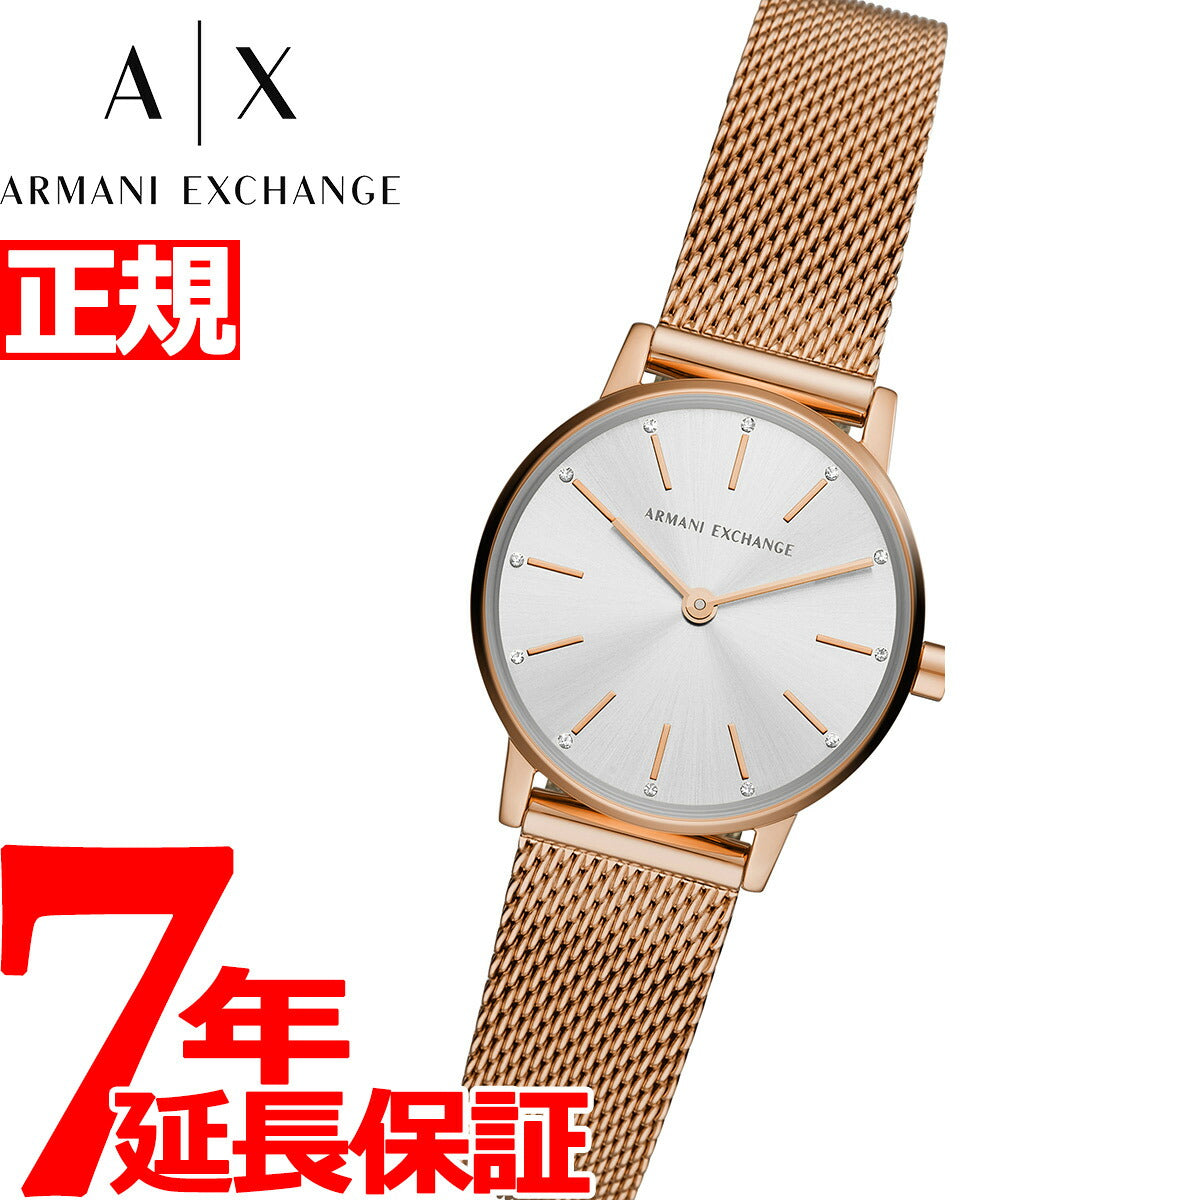 A|X アルマーニ エクスチェンジ ARMANI EXCHANGE 腕時計 レディース ローラ LOLA AX7121